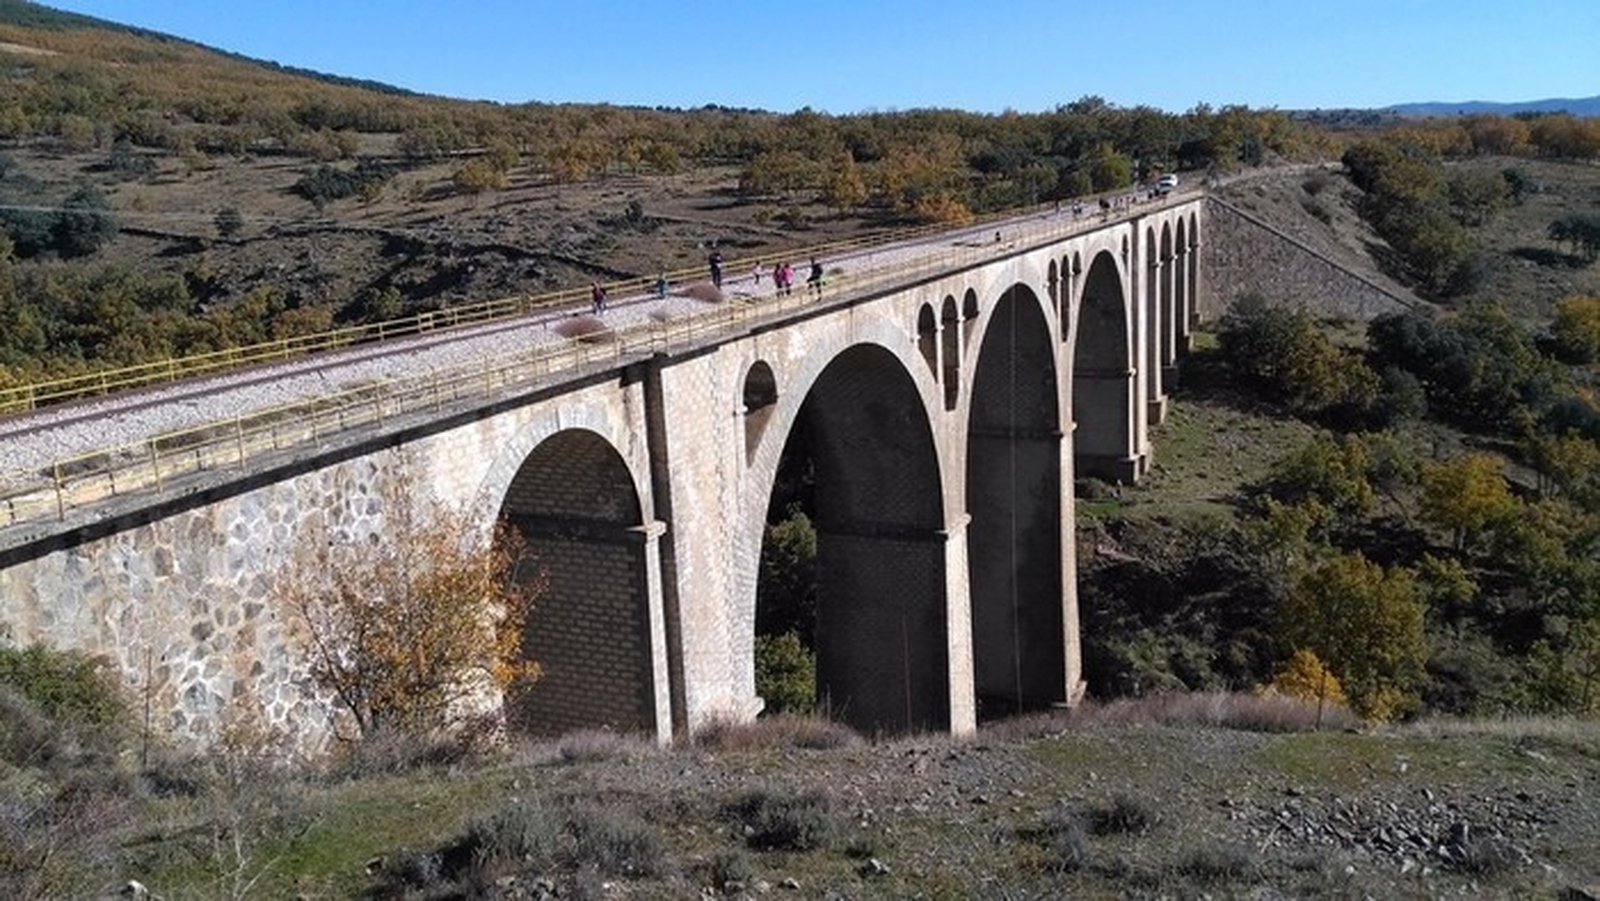 Uno de los puentes más populares entre los amantes del puenting está en Madrid